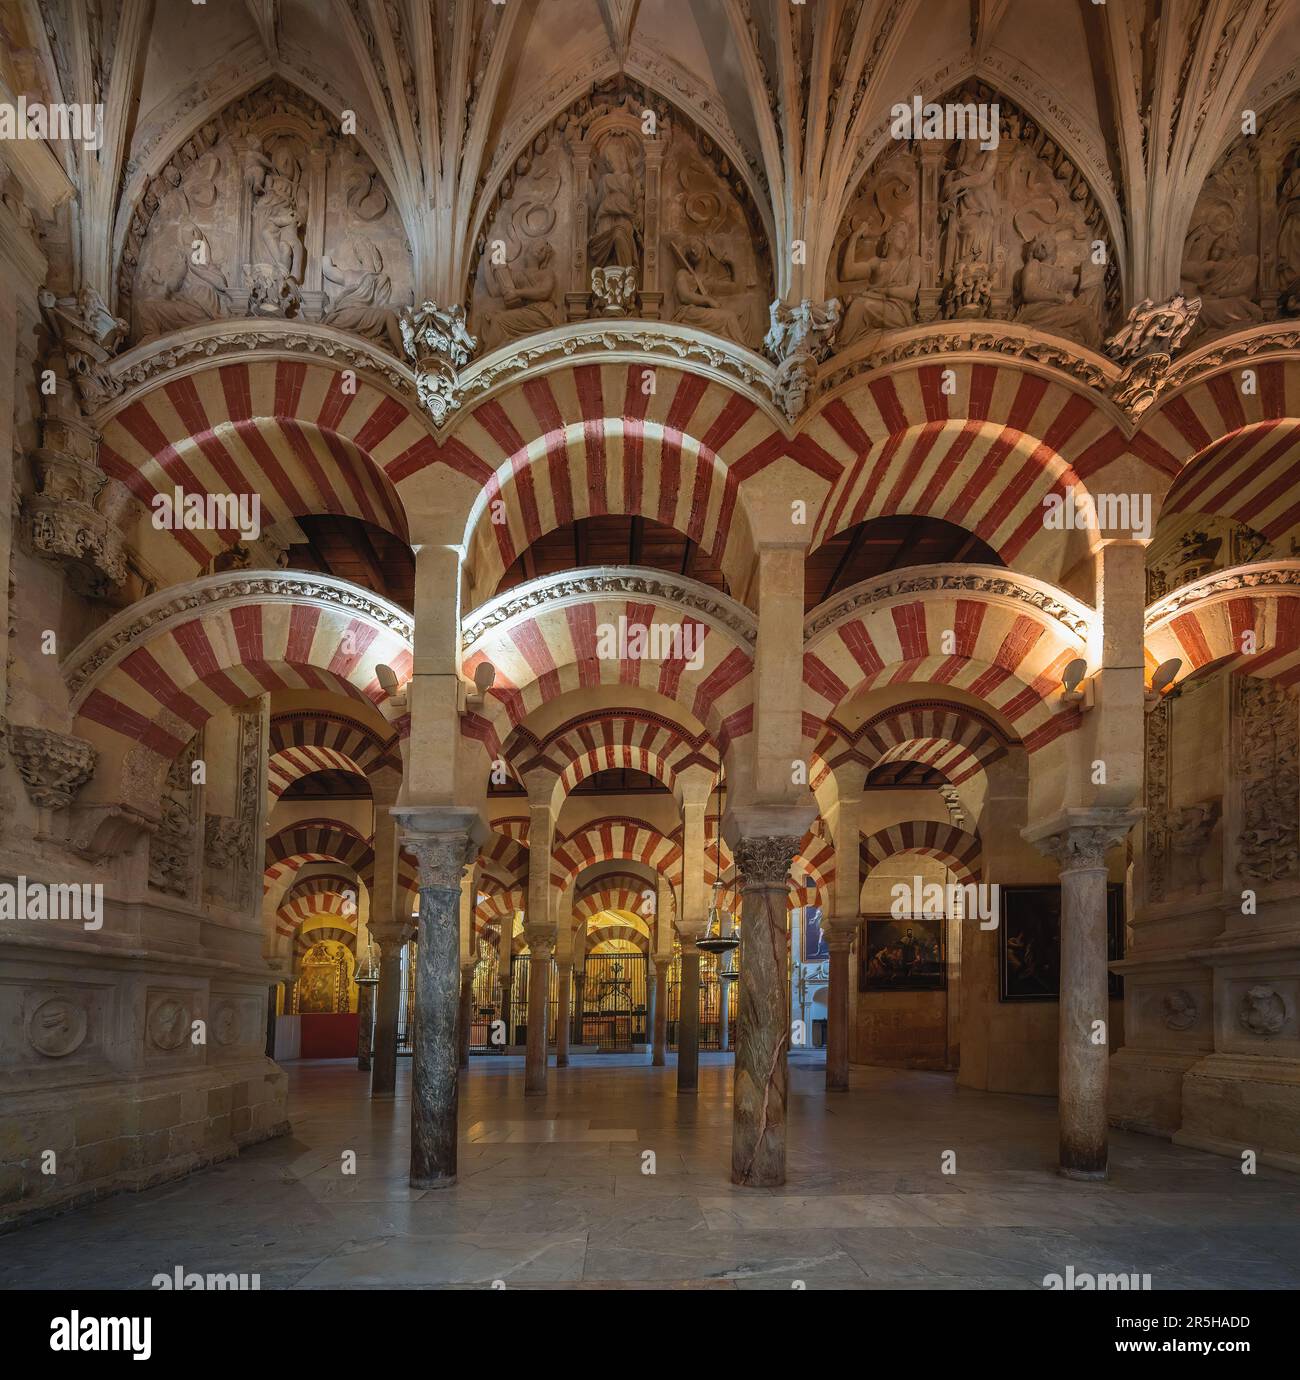 Bögen und Säulen der hypostilvollen Gebetshalle in der Moschee-Kathedrale von Cordoba (Al-Hakam II. Expasion) - Cordoba, Andalusien, Spanien Stockfoto